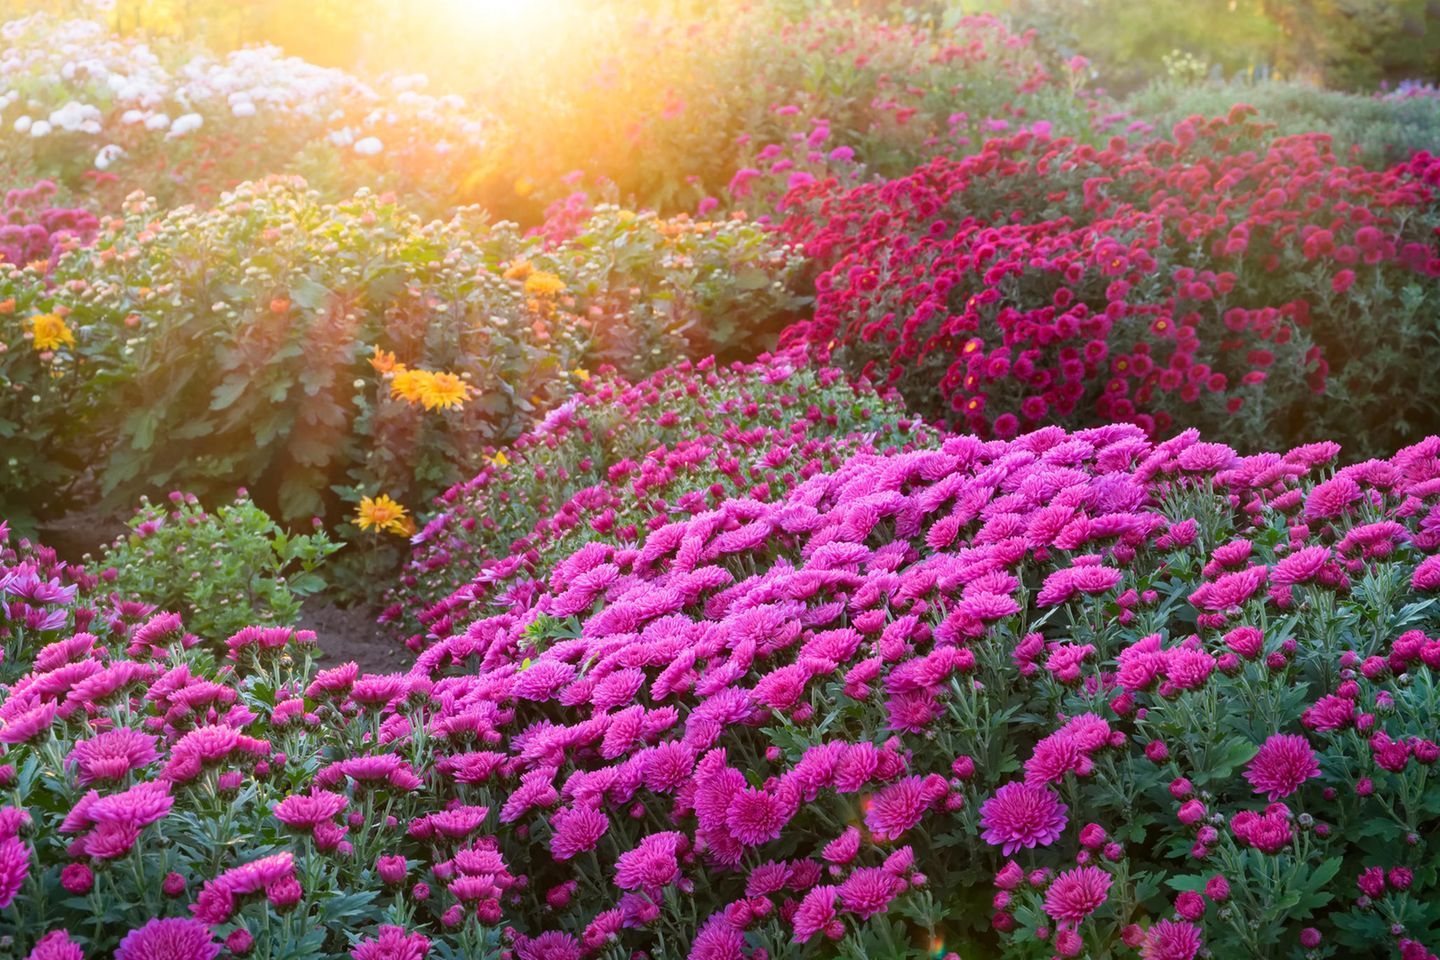  Blumenwiese Hintergrundbild 1440x960. Ganzjähriges Gartenbeet mit Frühlings- und Herbstblumen - [SCHÖNER WOHNEN]